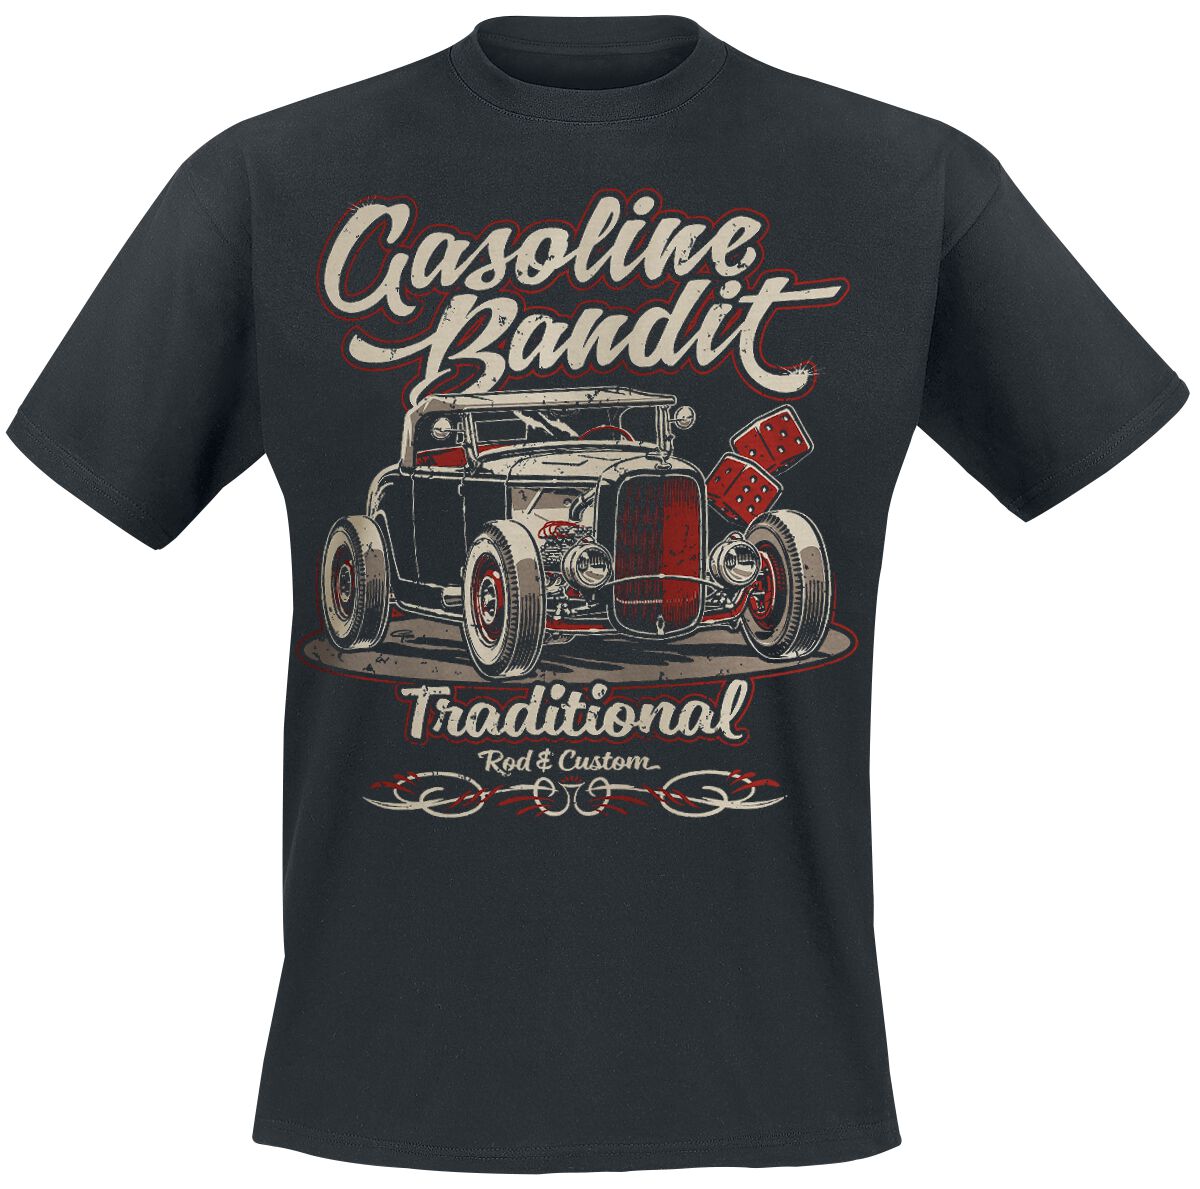 Gasoline Bandit - Rockabilly T-Shirt - Traditional - S bis XXL - für Männer - Größe XXL - schwarz